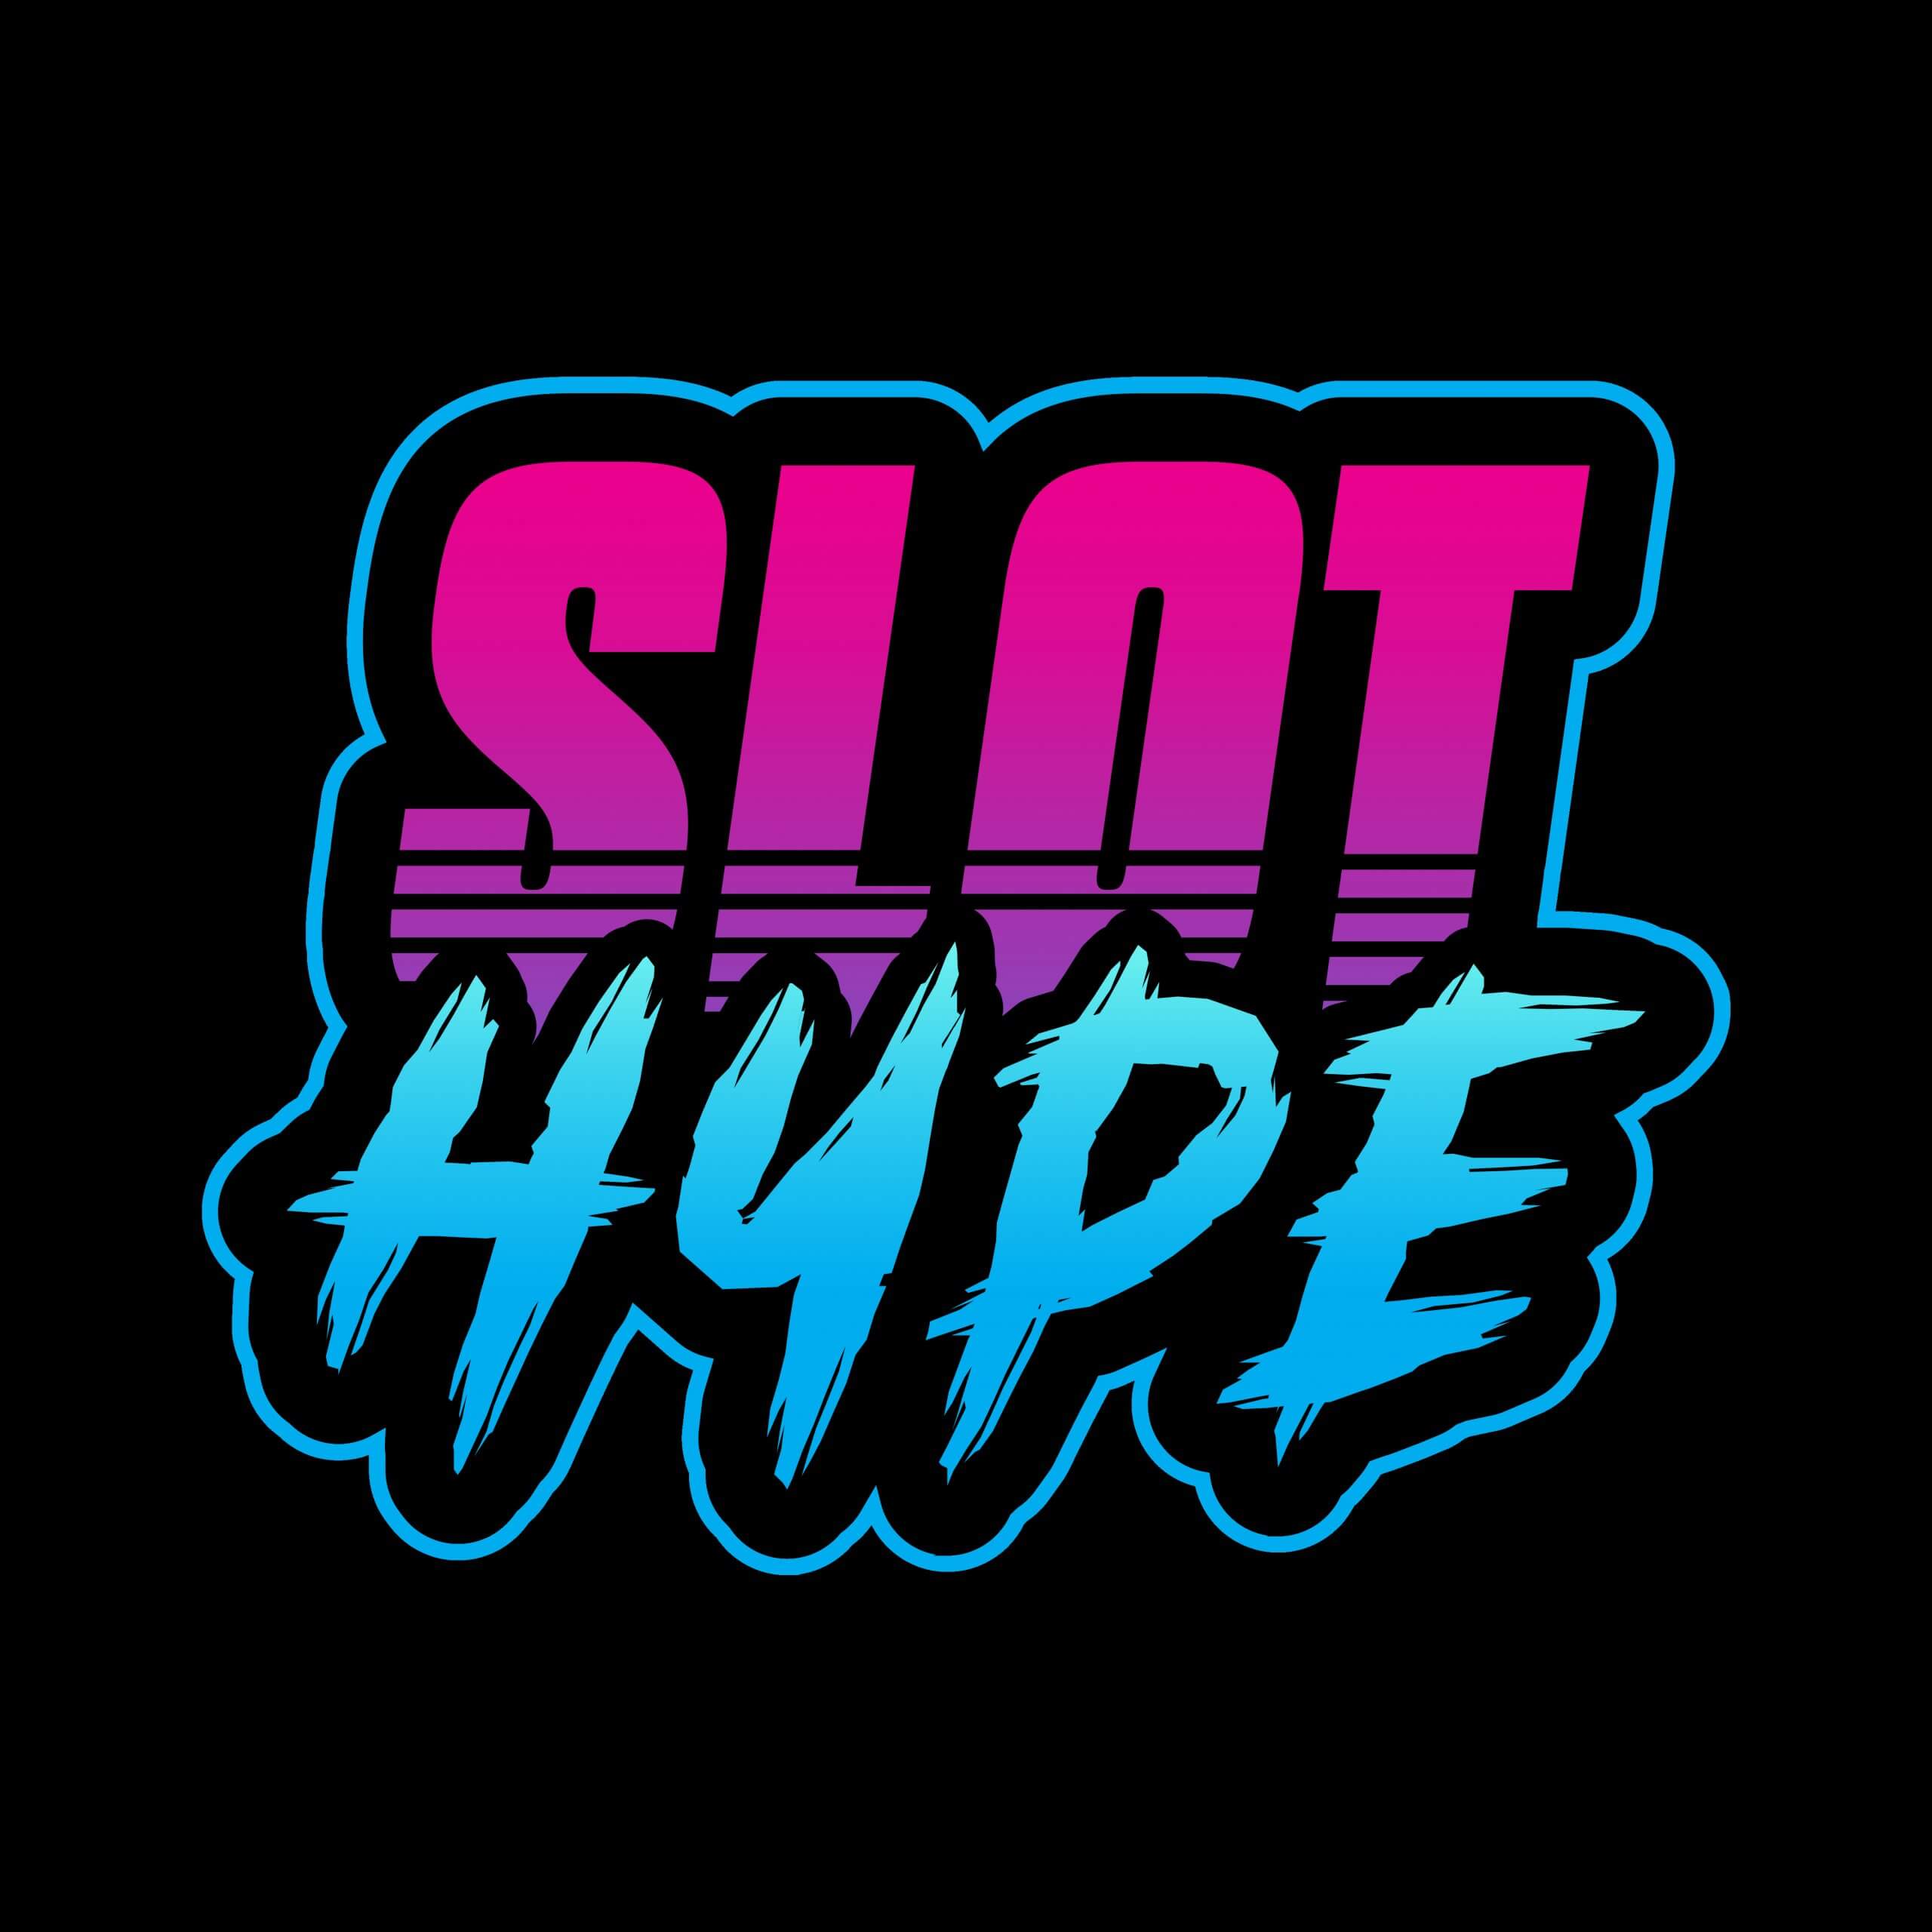 Slothype